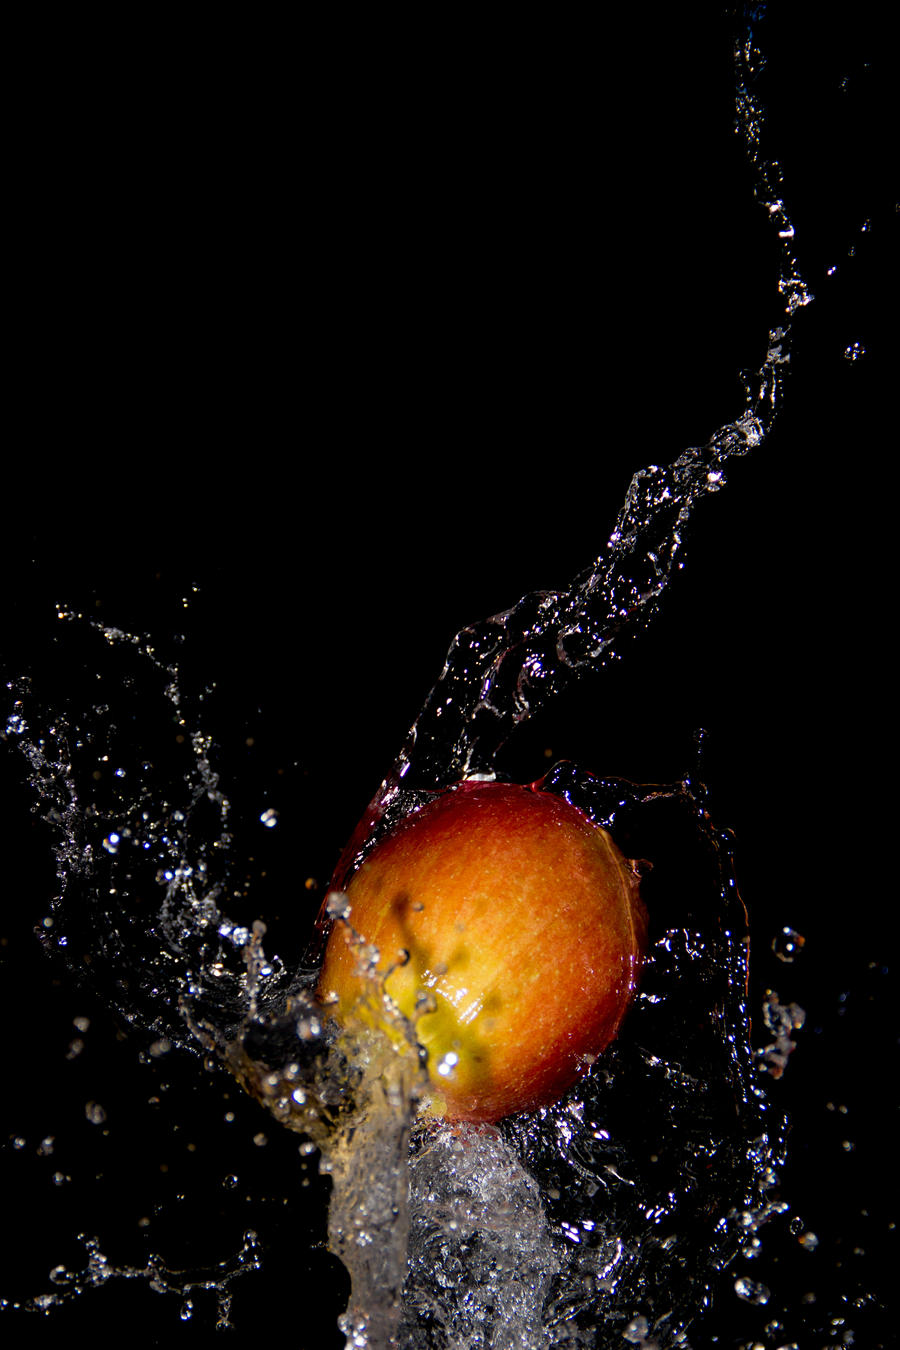 Water Splashing on Apple